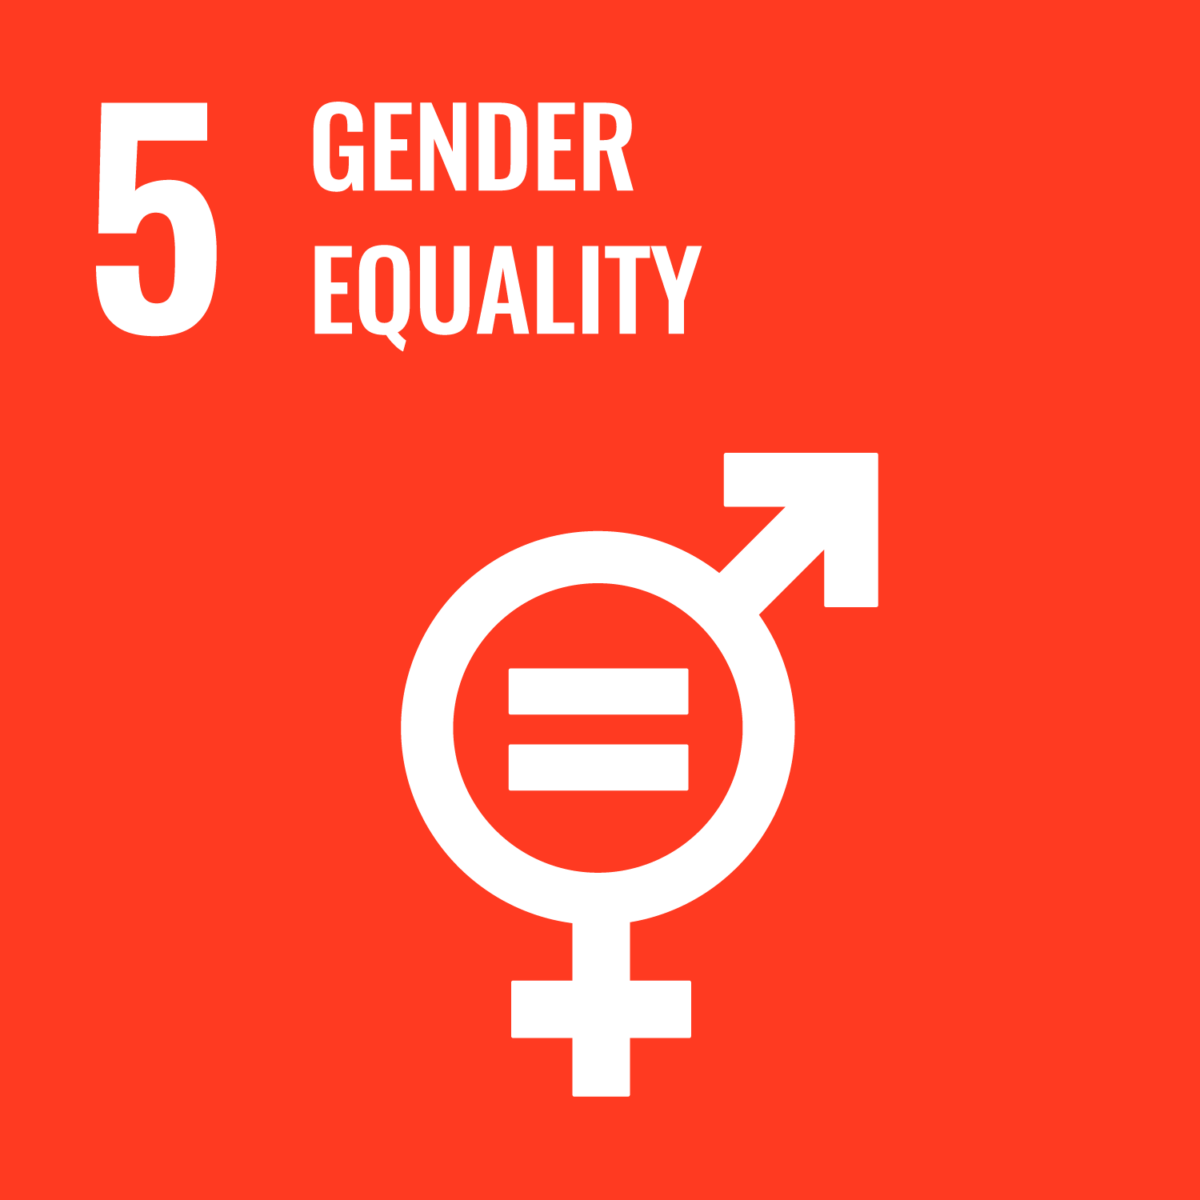 Logotipo de la igualdad de género del Objetivo de Desarrollo Sostenible 5 de las Naciones Unidas